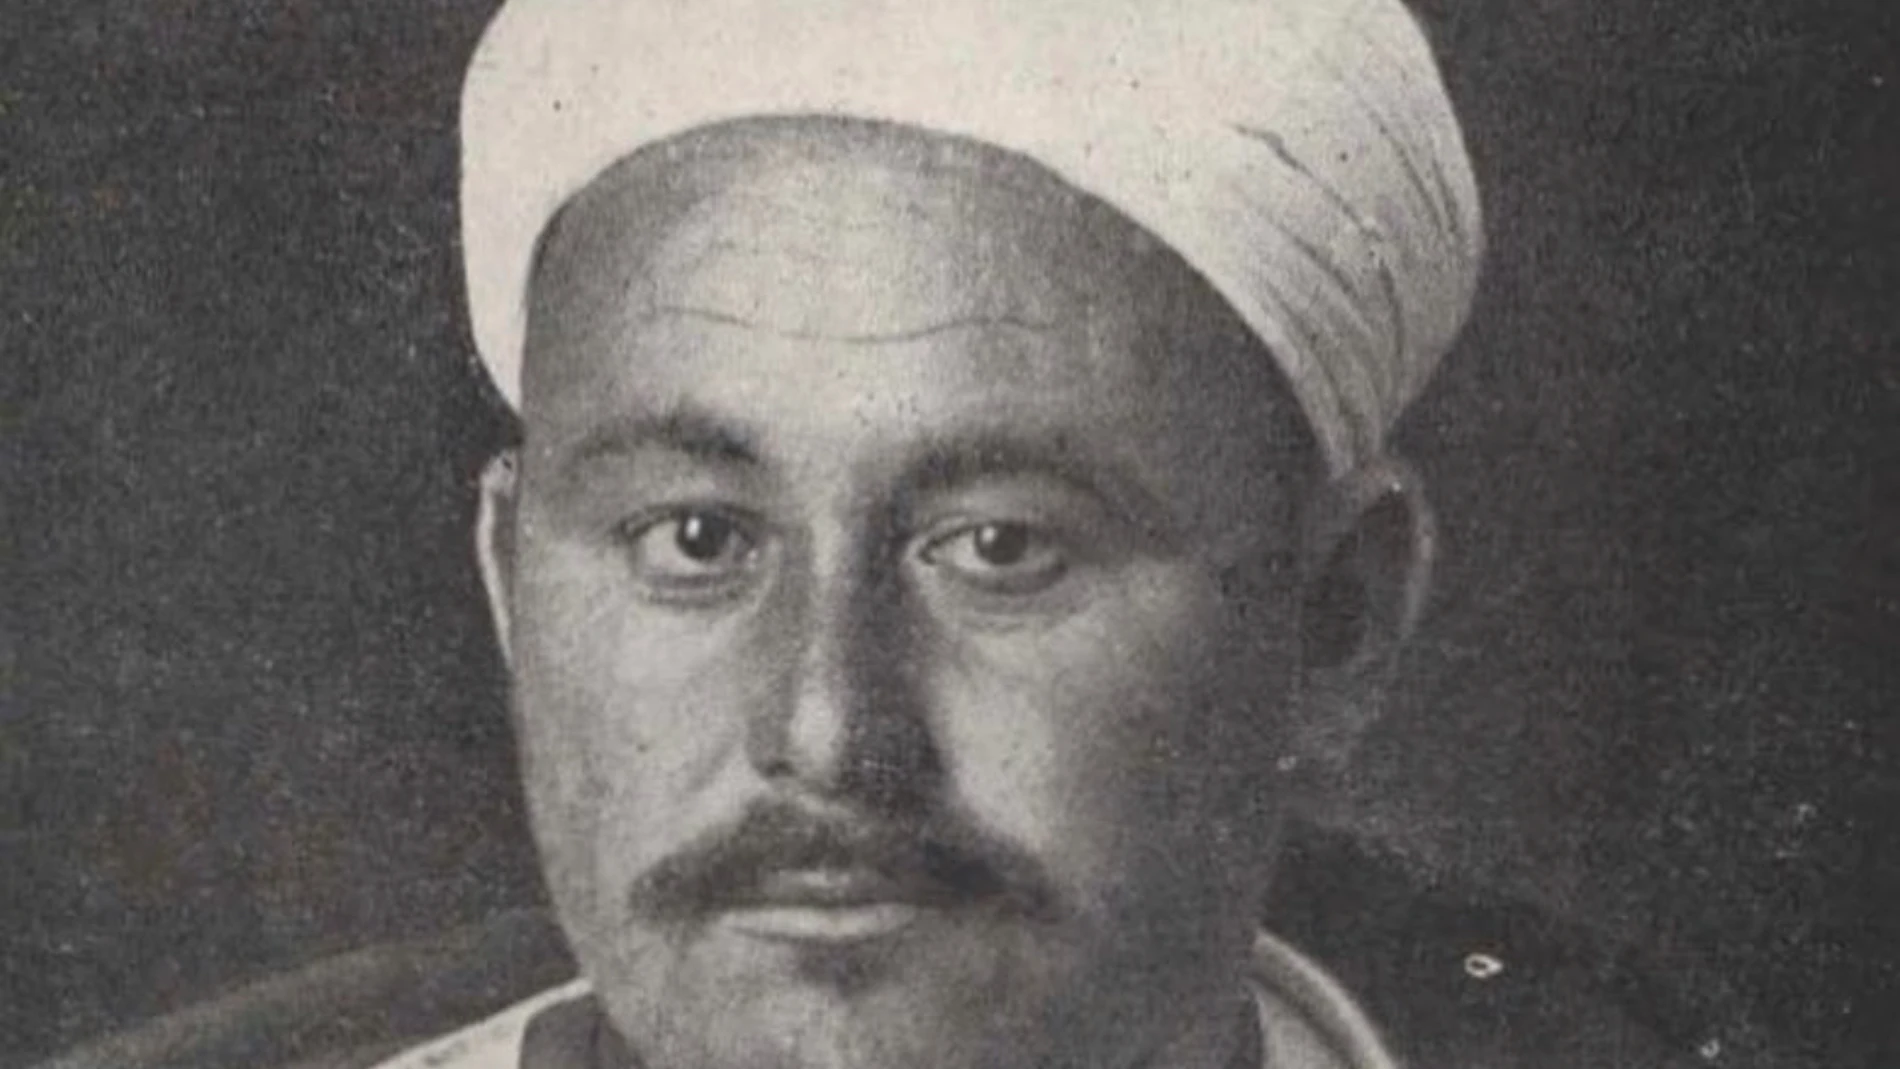 El líder rifeño Abd El-Krim